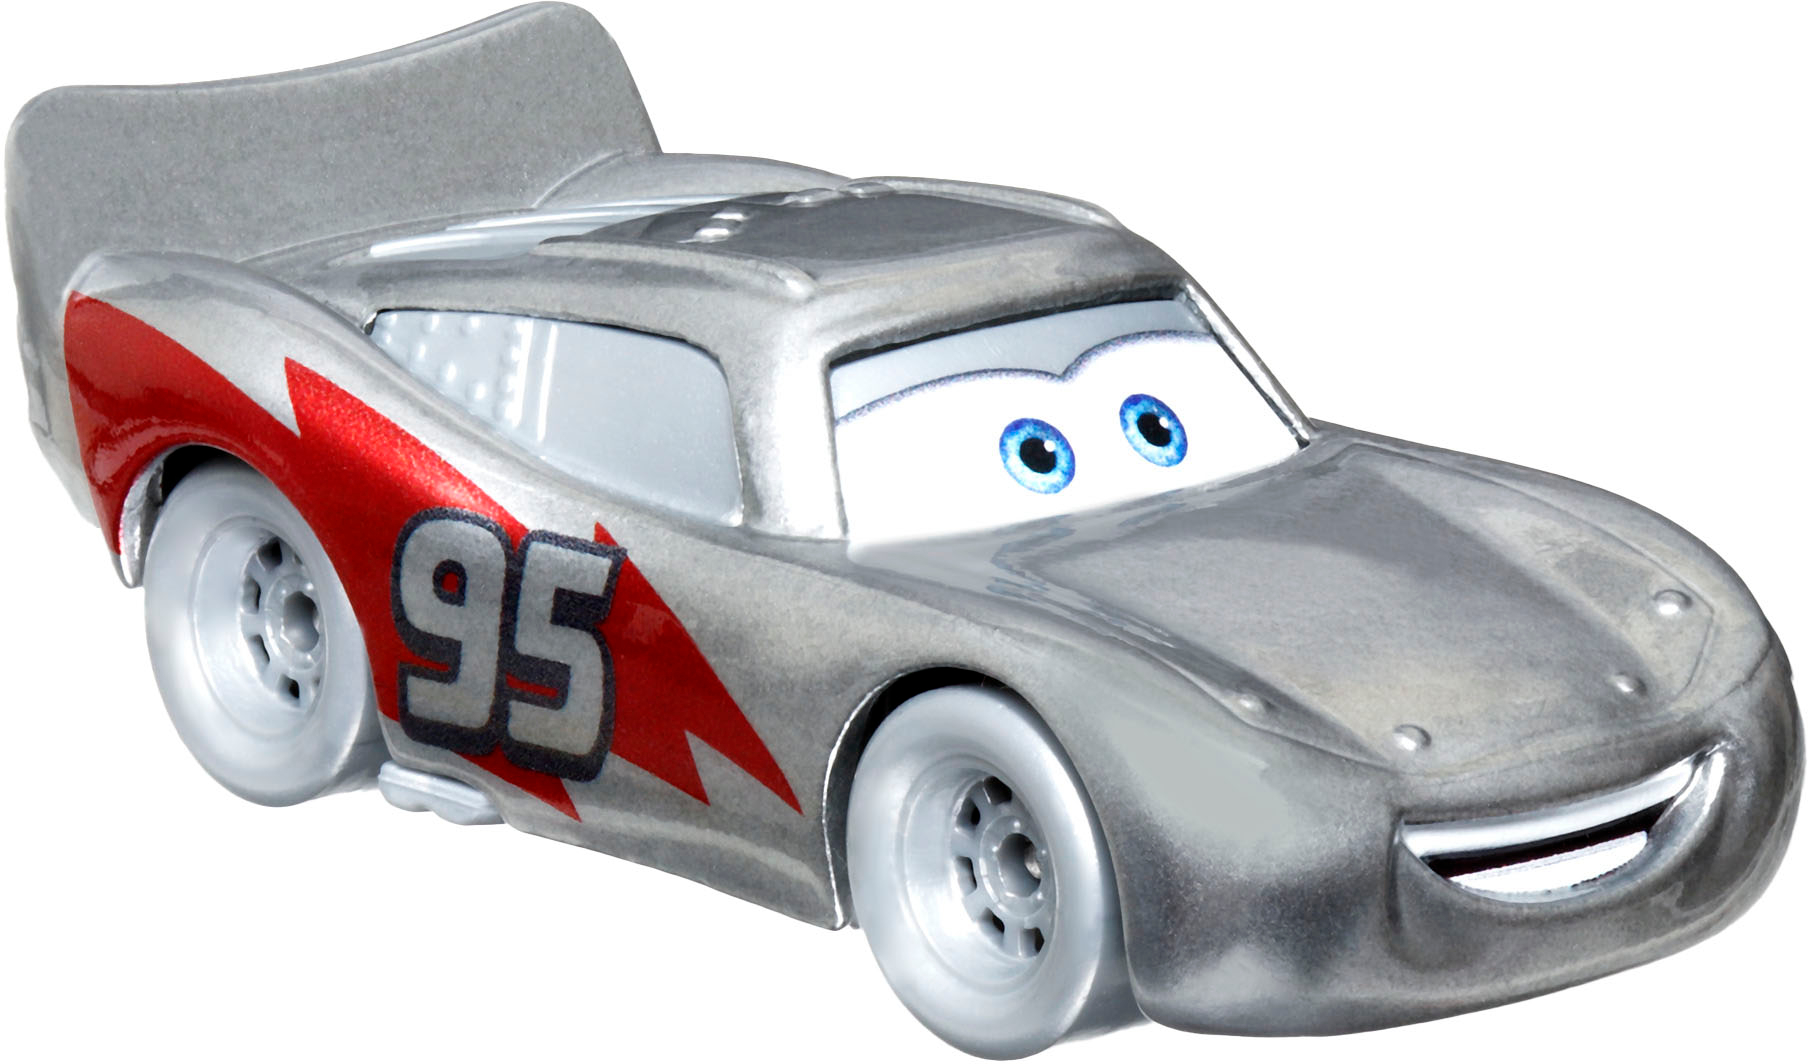 Disney D100 Pixar Cars 1:55 Scale (5-Pack) Grey HPL98 - Best Buy